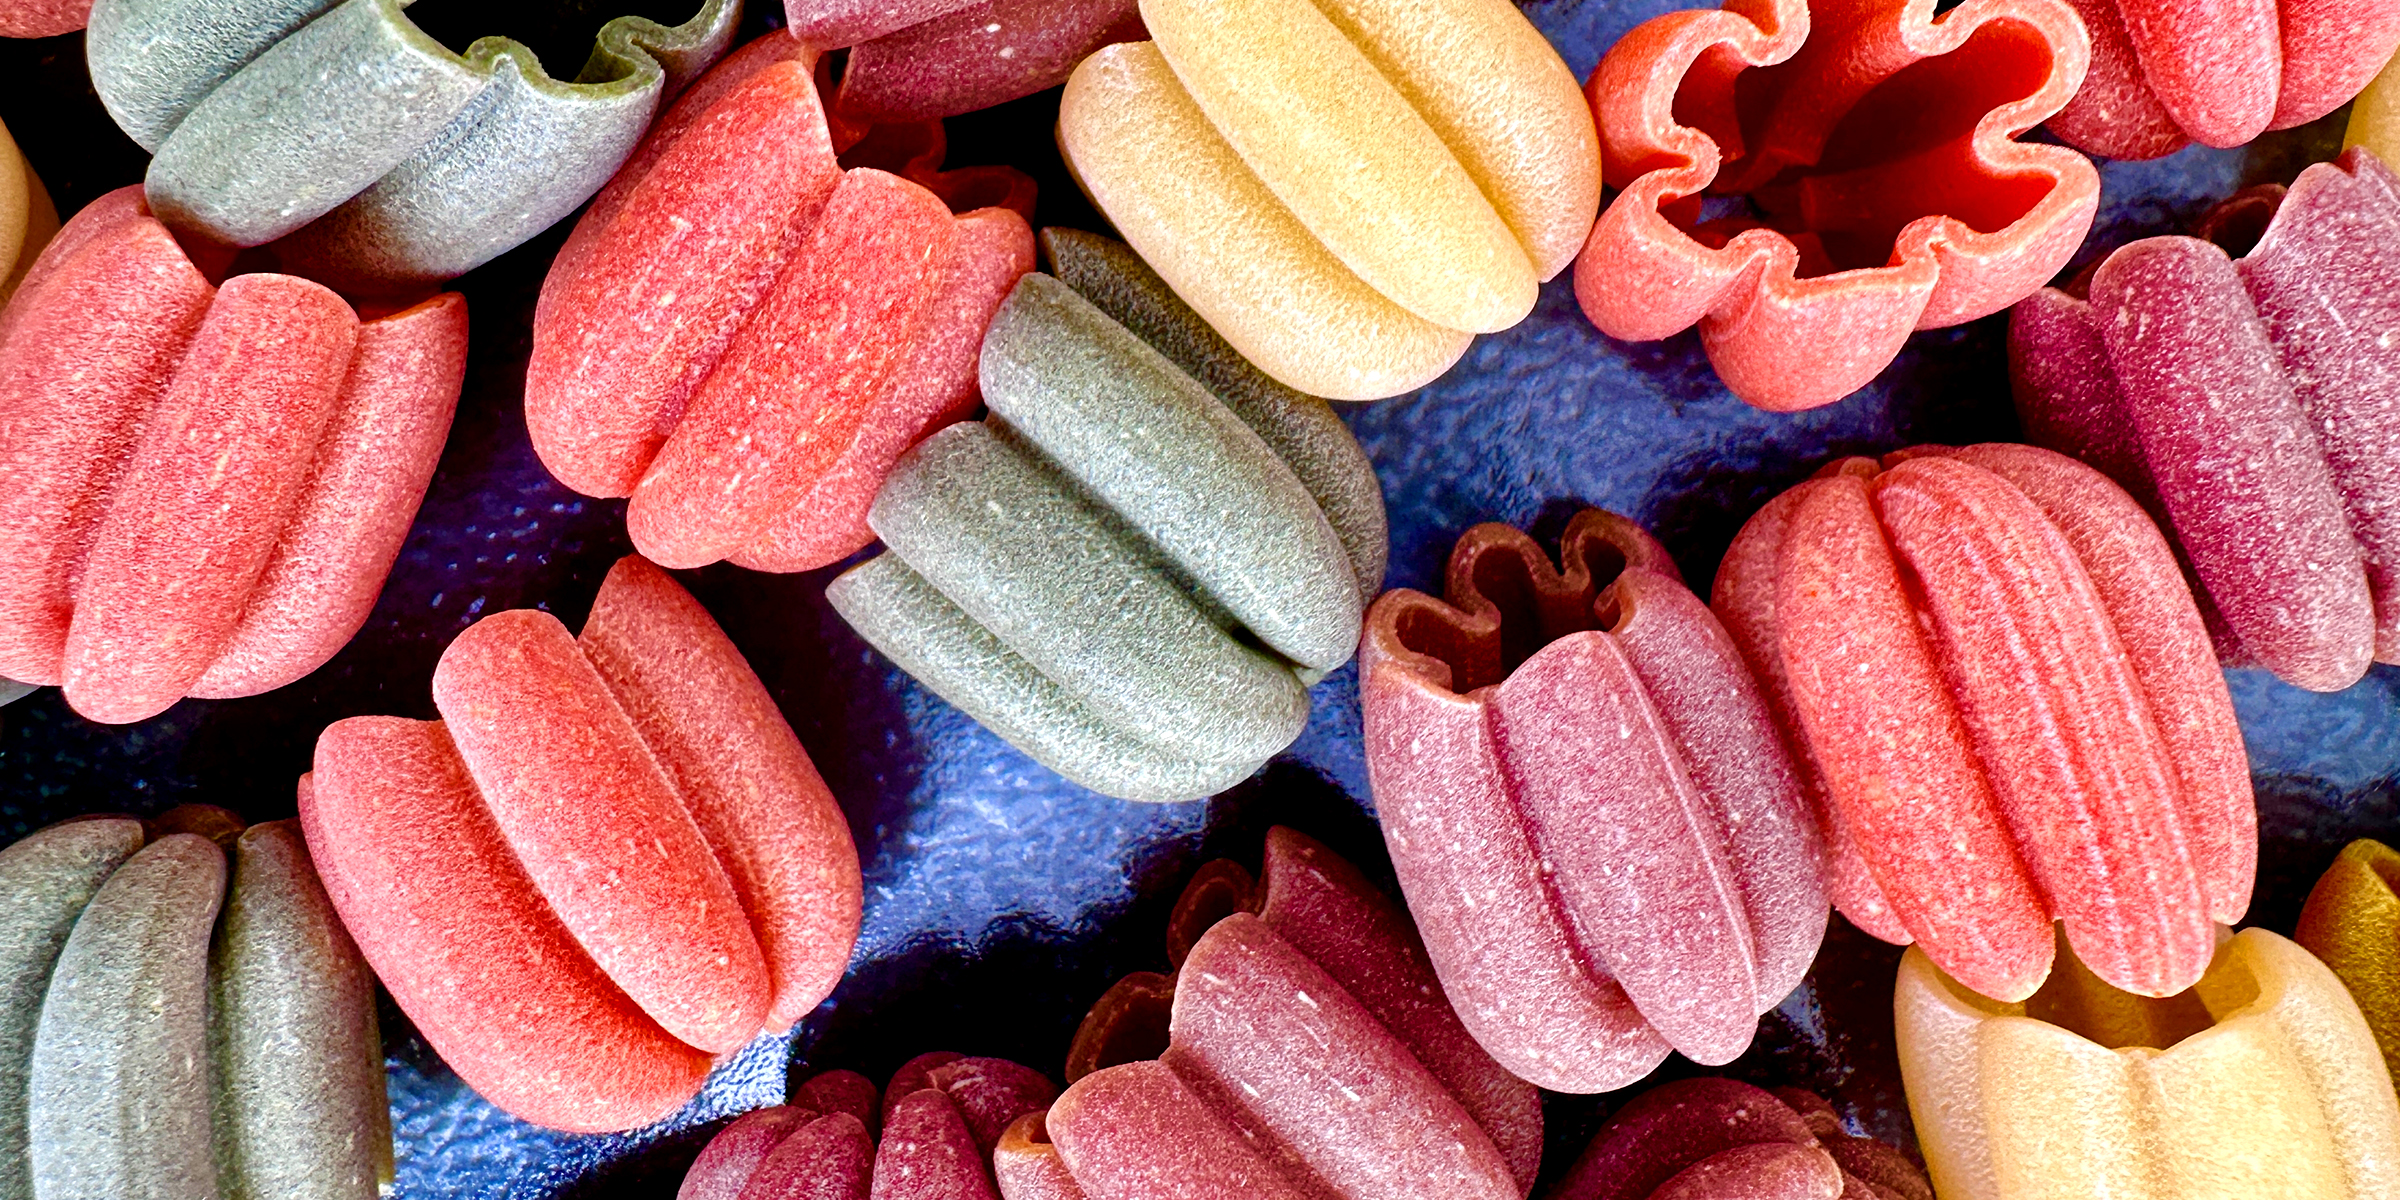 Zucchette pasta | Source: Shutterstock